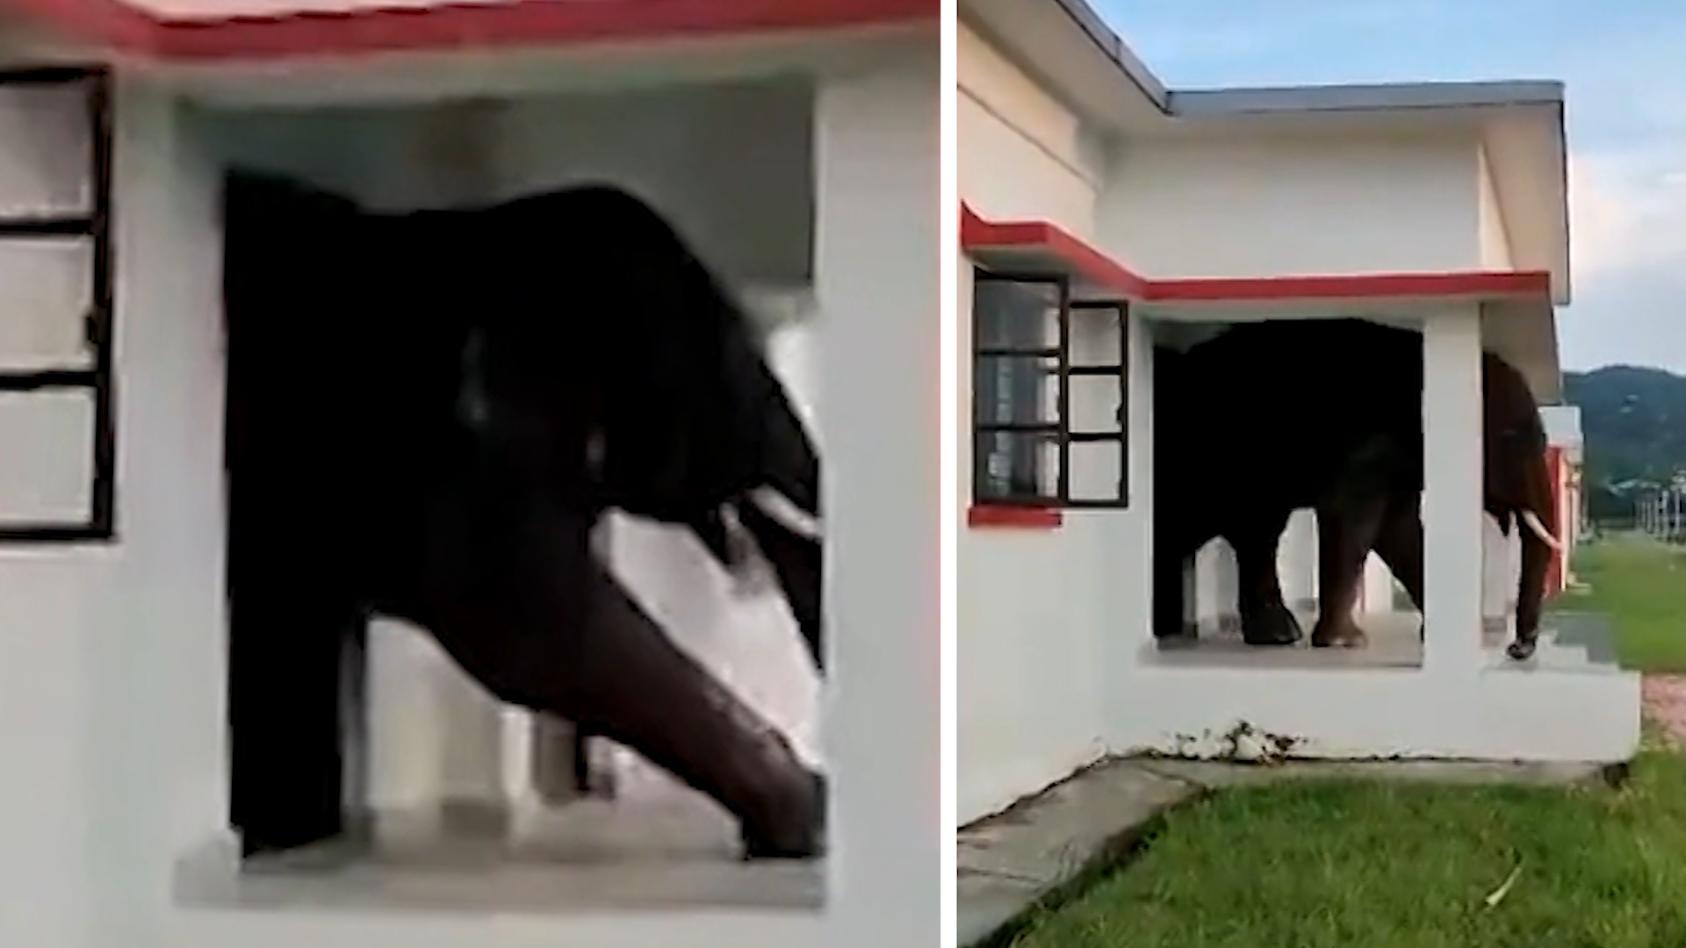 Elefant bricht in Wohnhaus ein - und bleibt fast stecken! Weil er "hangry" ist